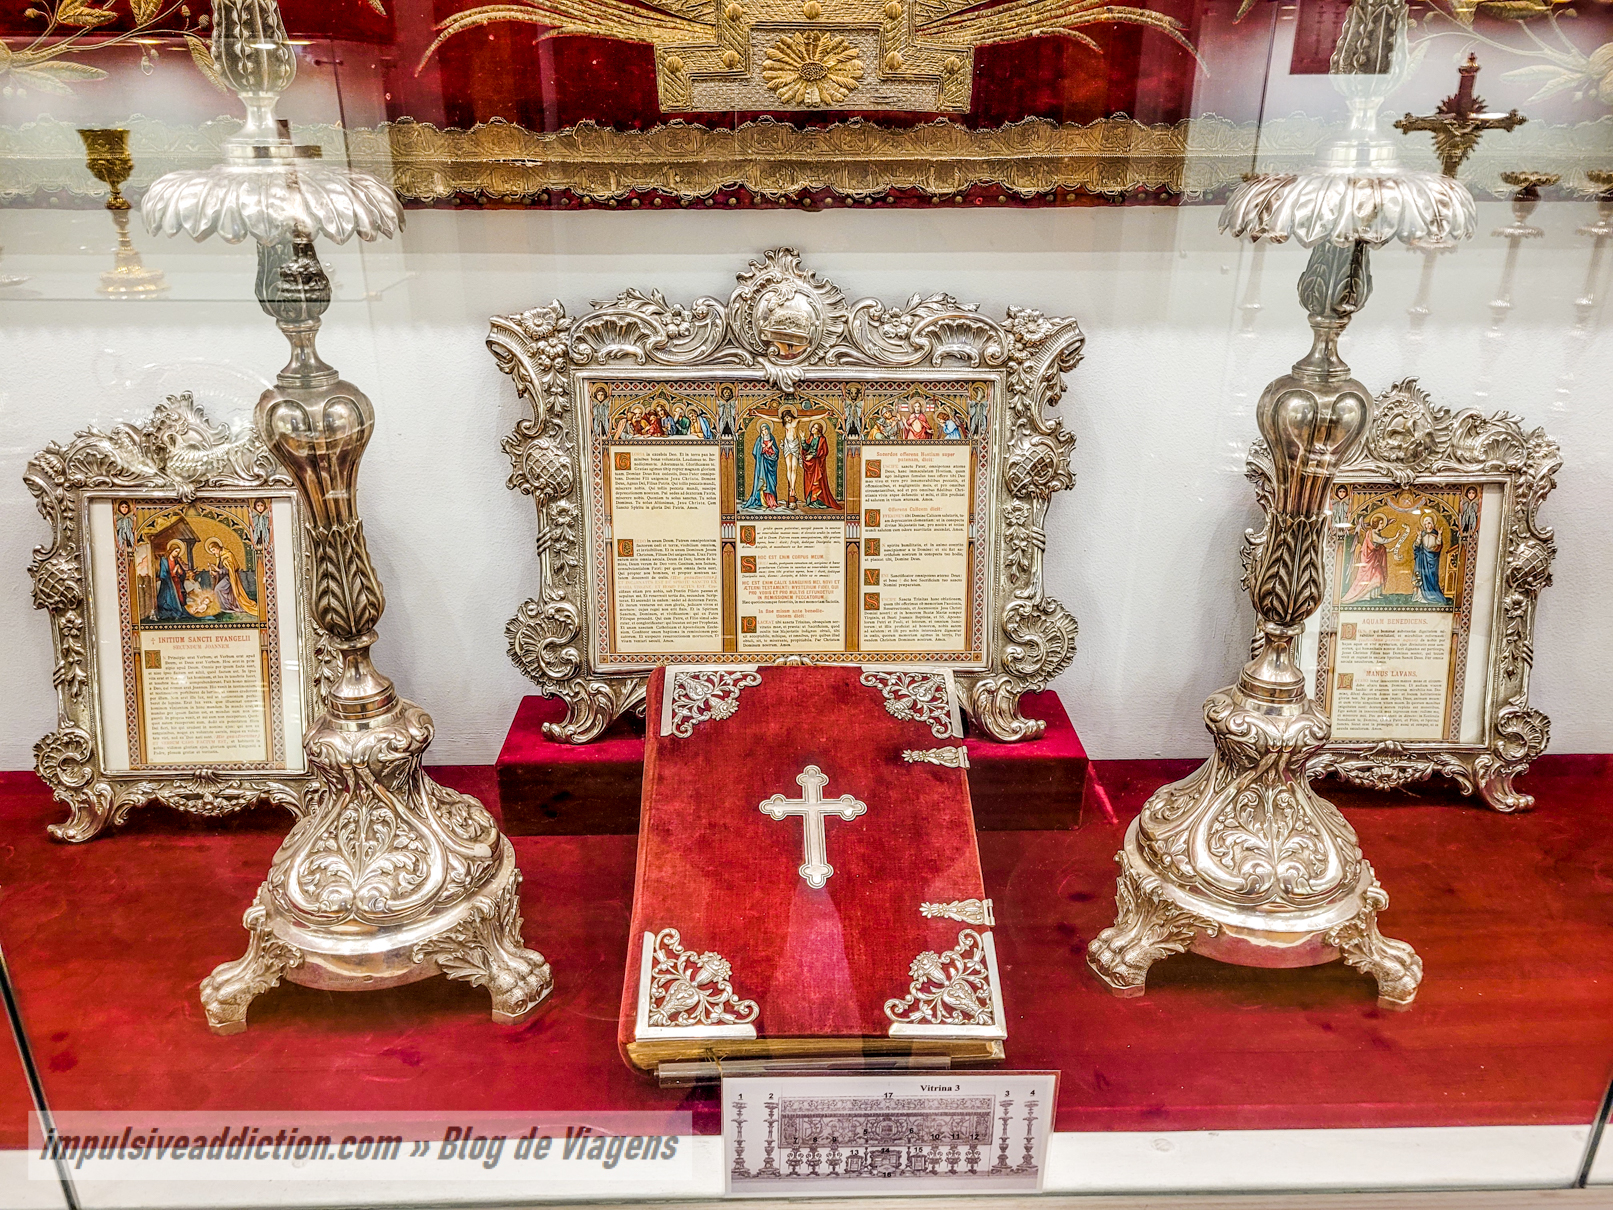 Museum of Sacred Art of Bom Jesus de Matosinhos